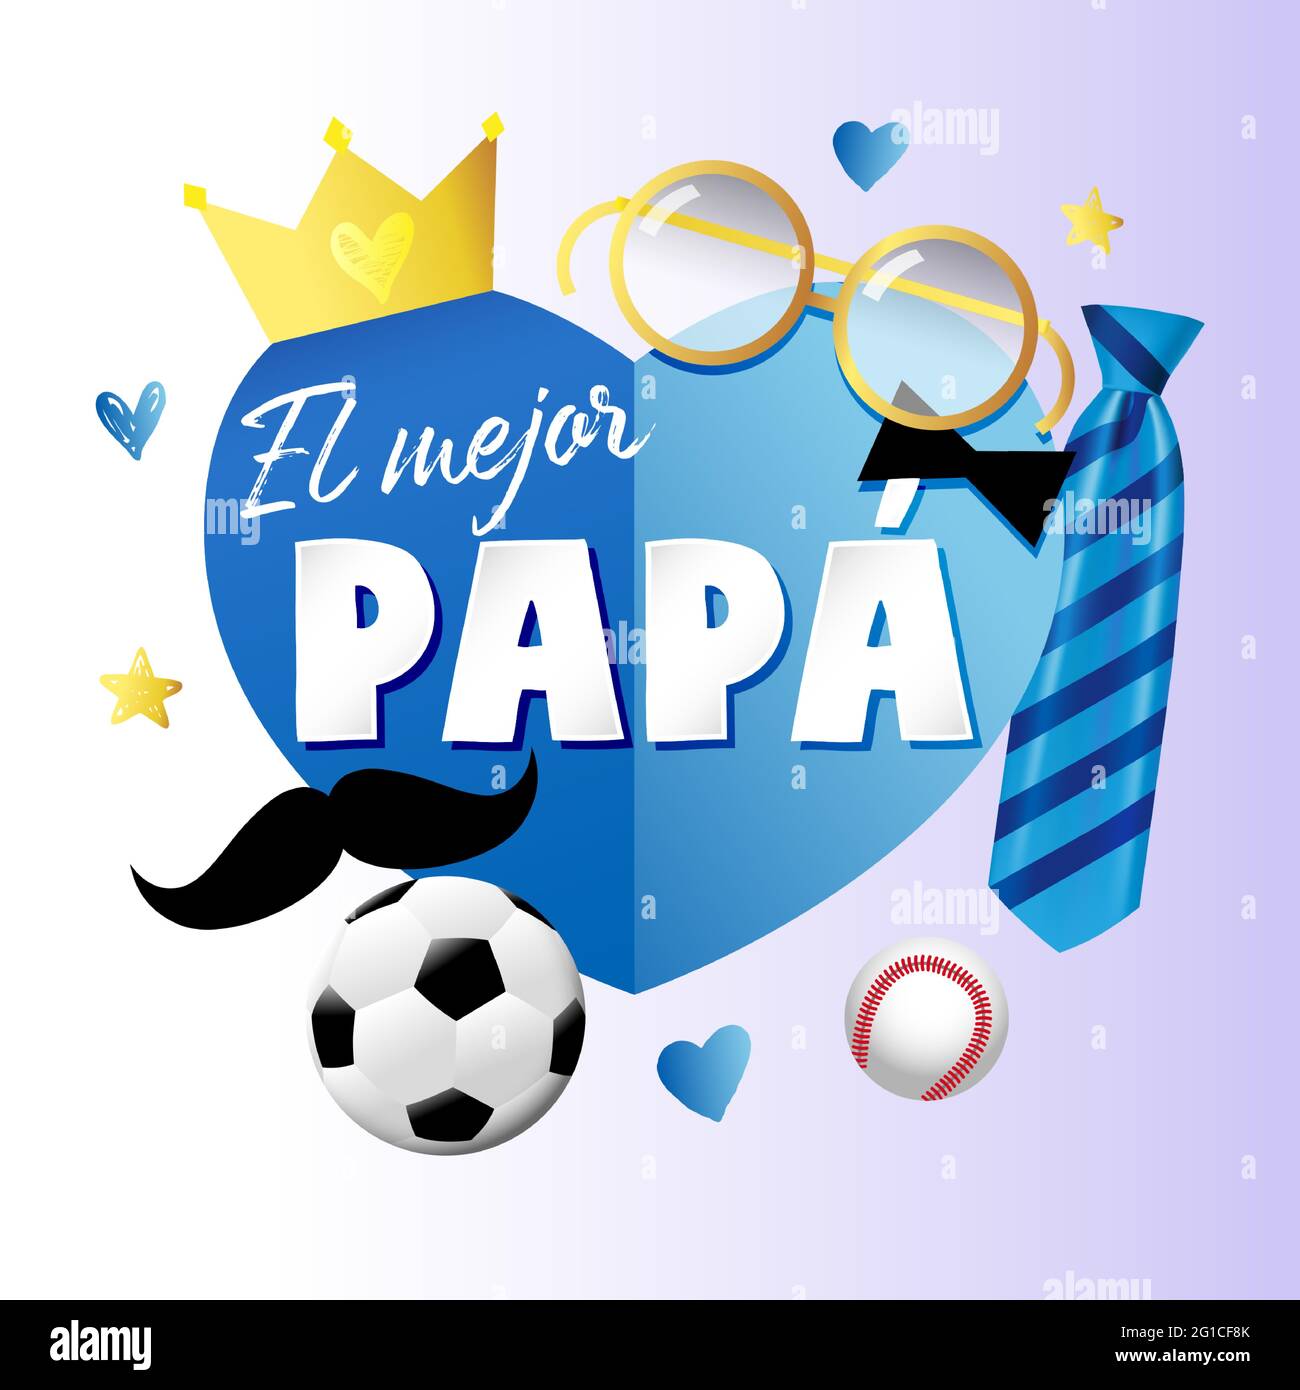 El mejor Papa - meilleur papa au monde bannière lettrage espagnol avec des  éléments de coeur en papier bleu, cravate, moustache et couronne. Carte  vectorielle de la fête des pères en Espagne